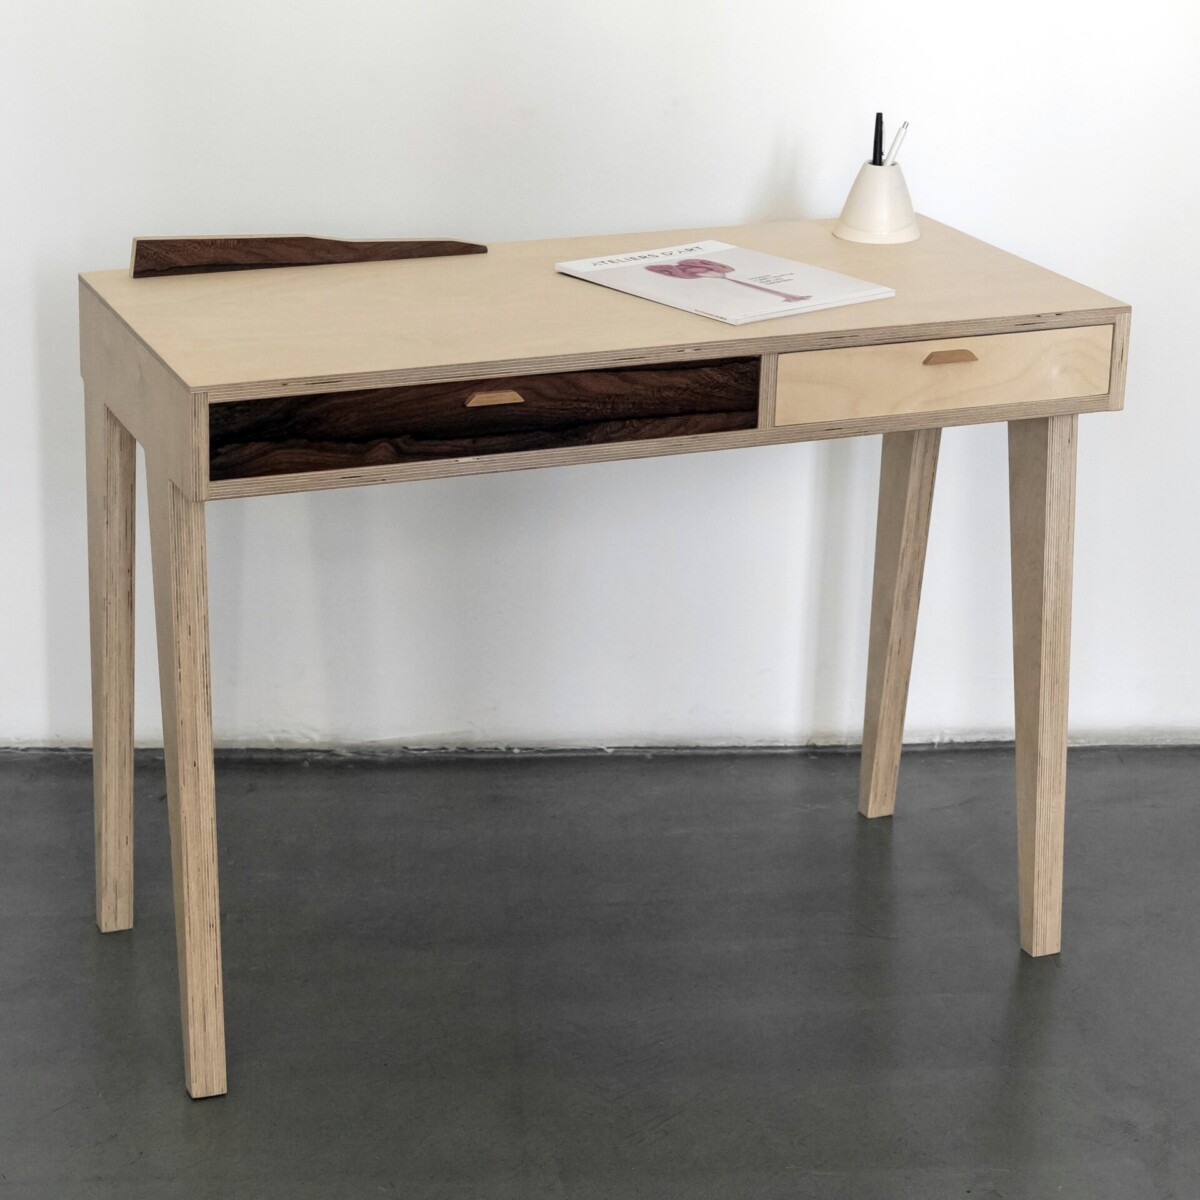 Bureau au design minimaliste et aux lignes épurées d'inspiration scandinave par l'Atelier Mermoz